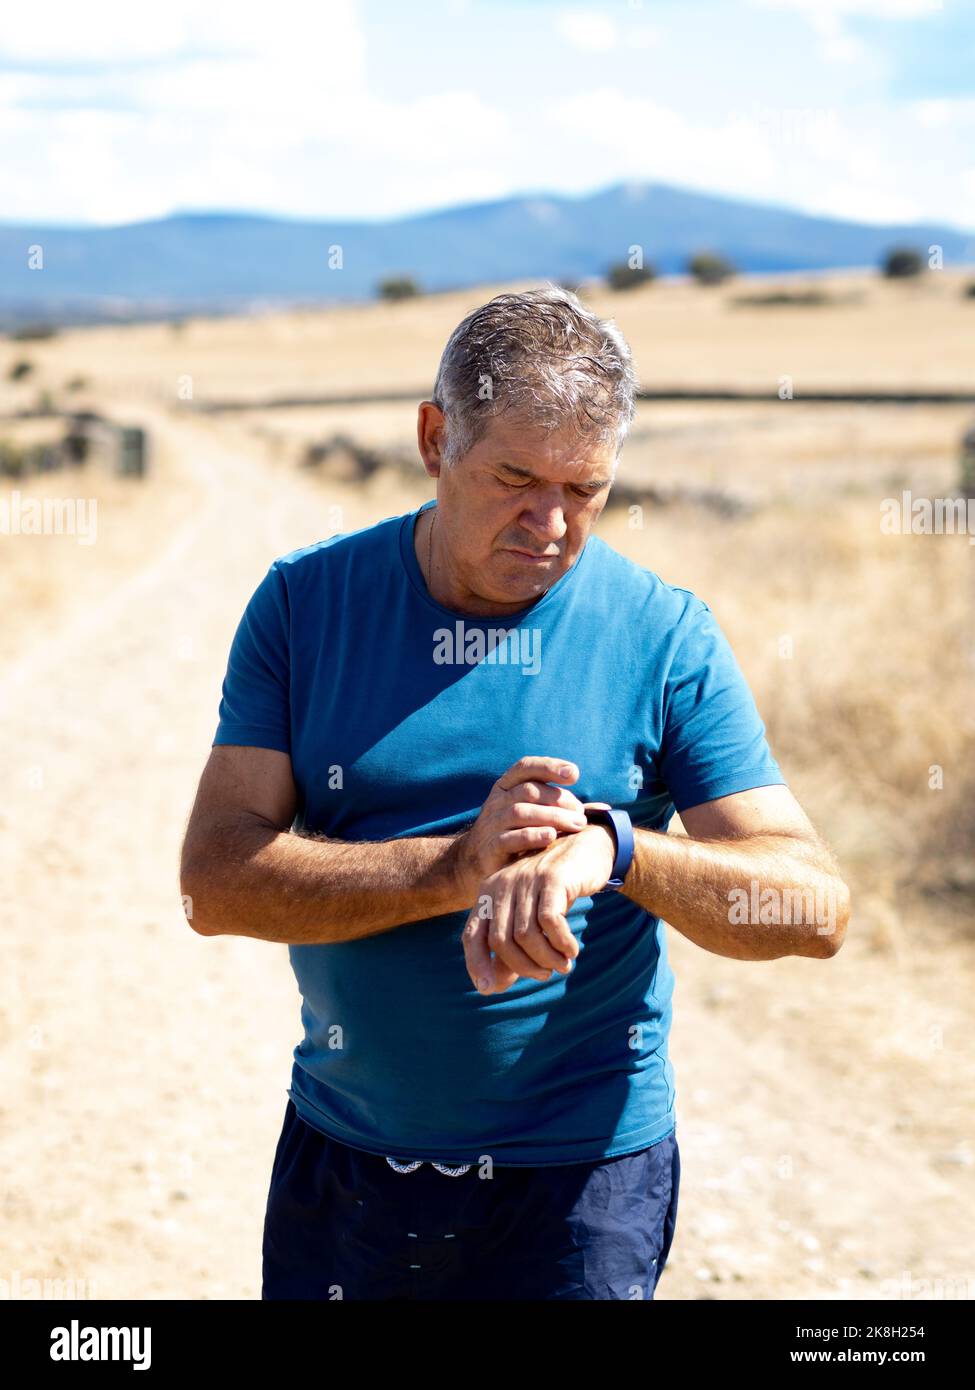 Spanischer älterer Mann, der eine Sportuhr beim Sport ansieht. Läufersport-App Stockfoto